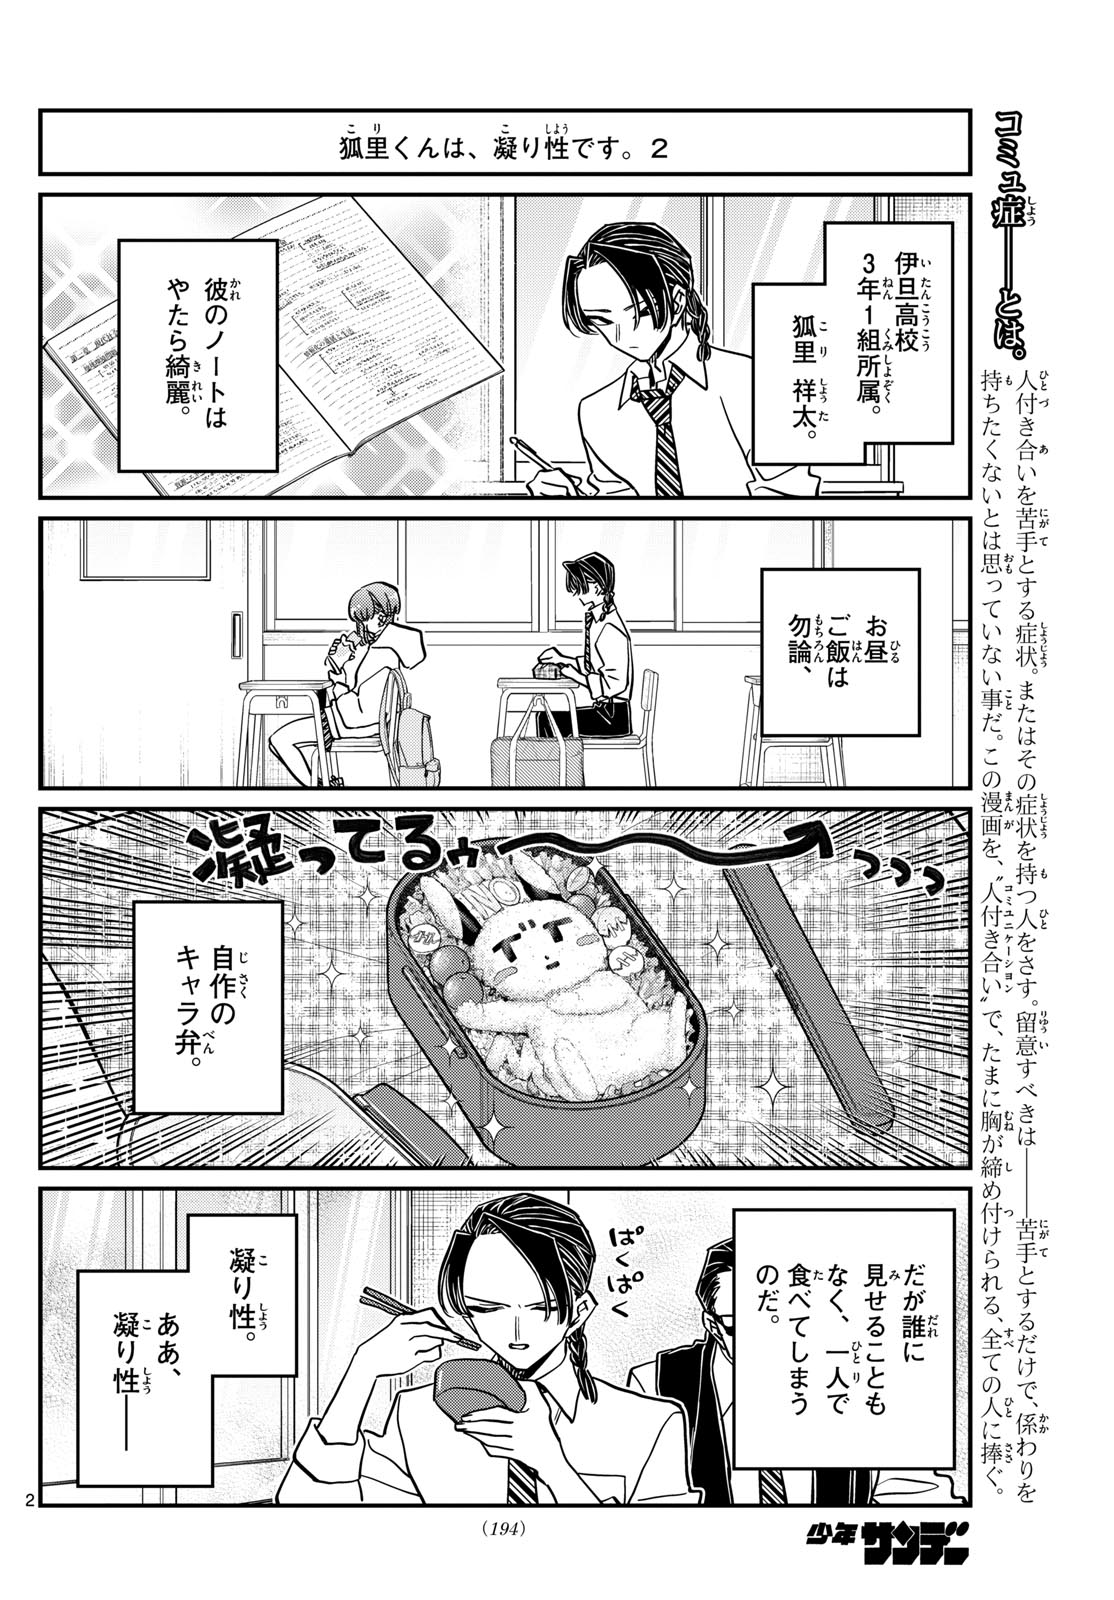 Komi-san wa Komyushou Desu - Chapter 448 - Page 2